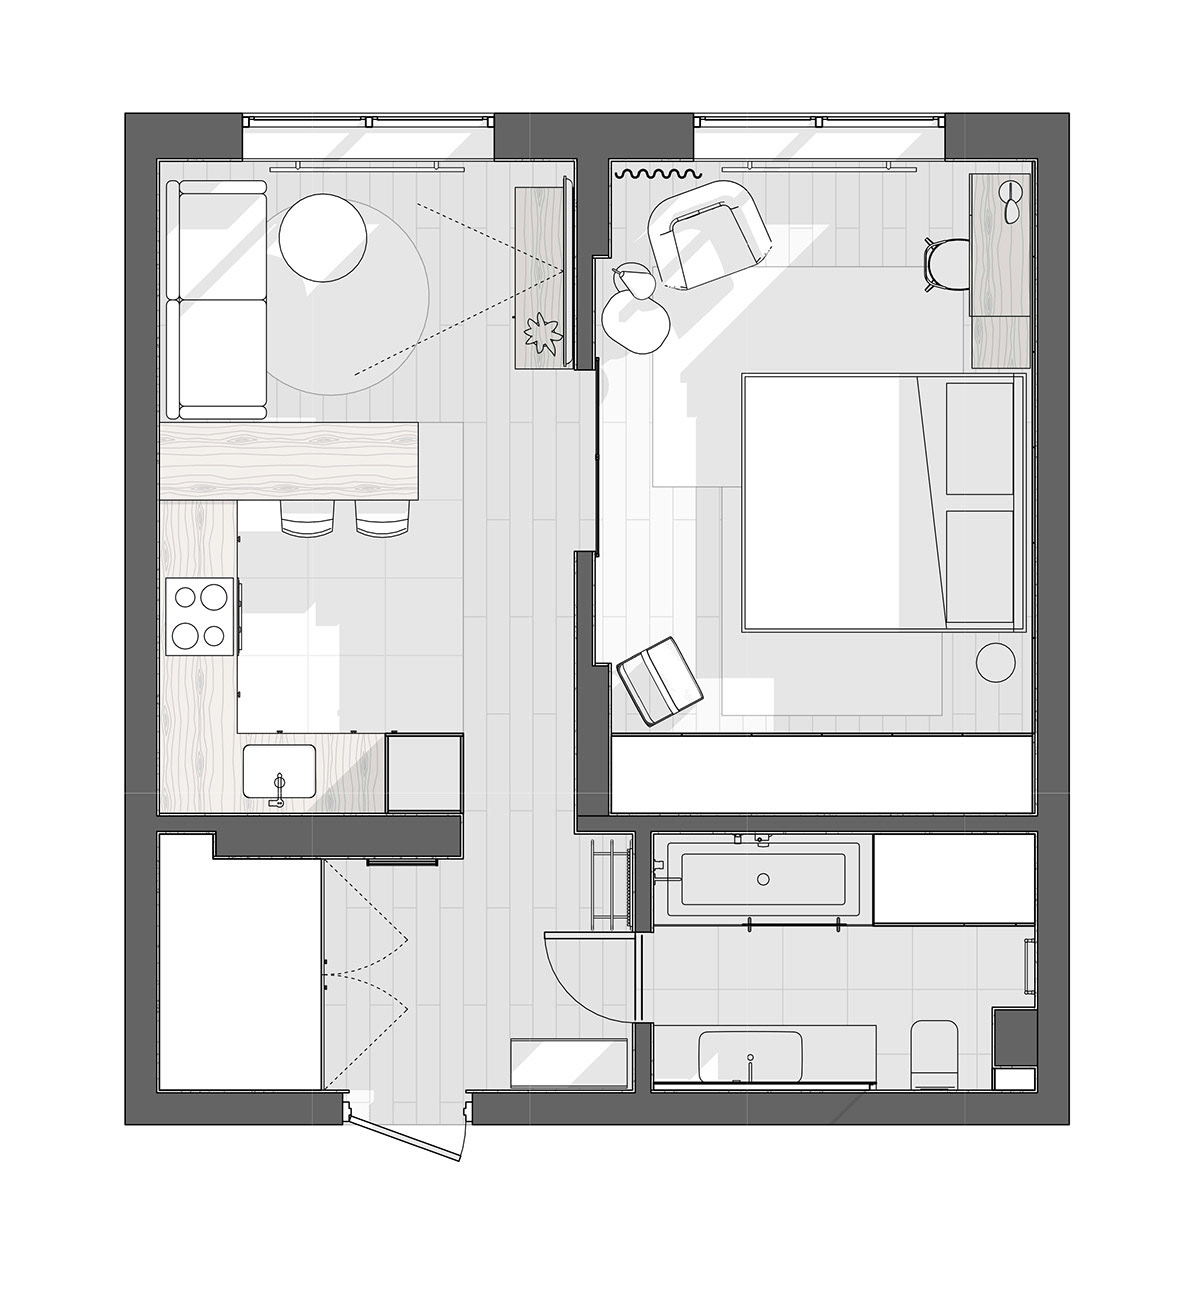 floor-plan-2-600x650.jpg